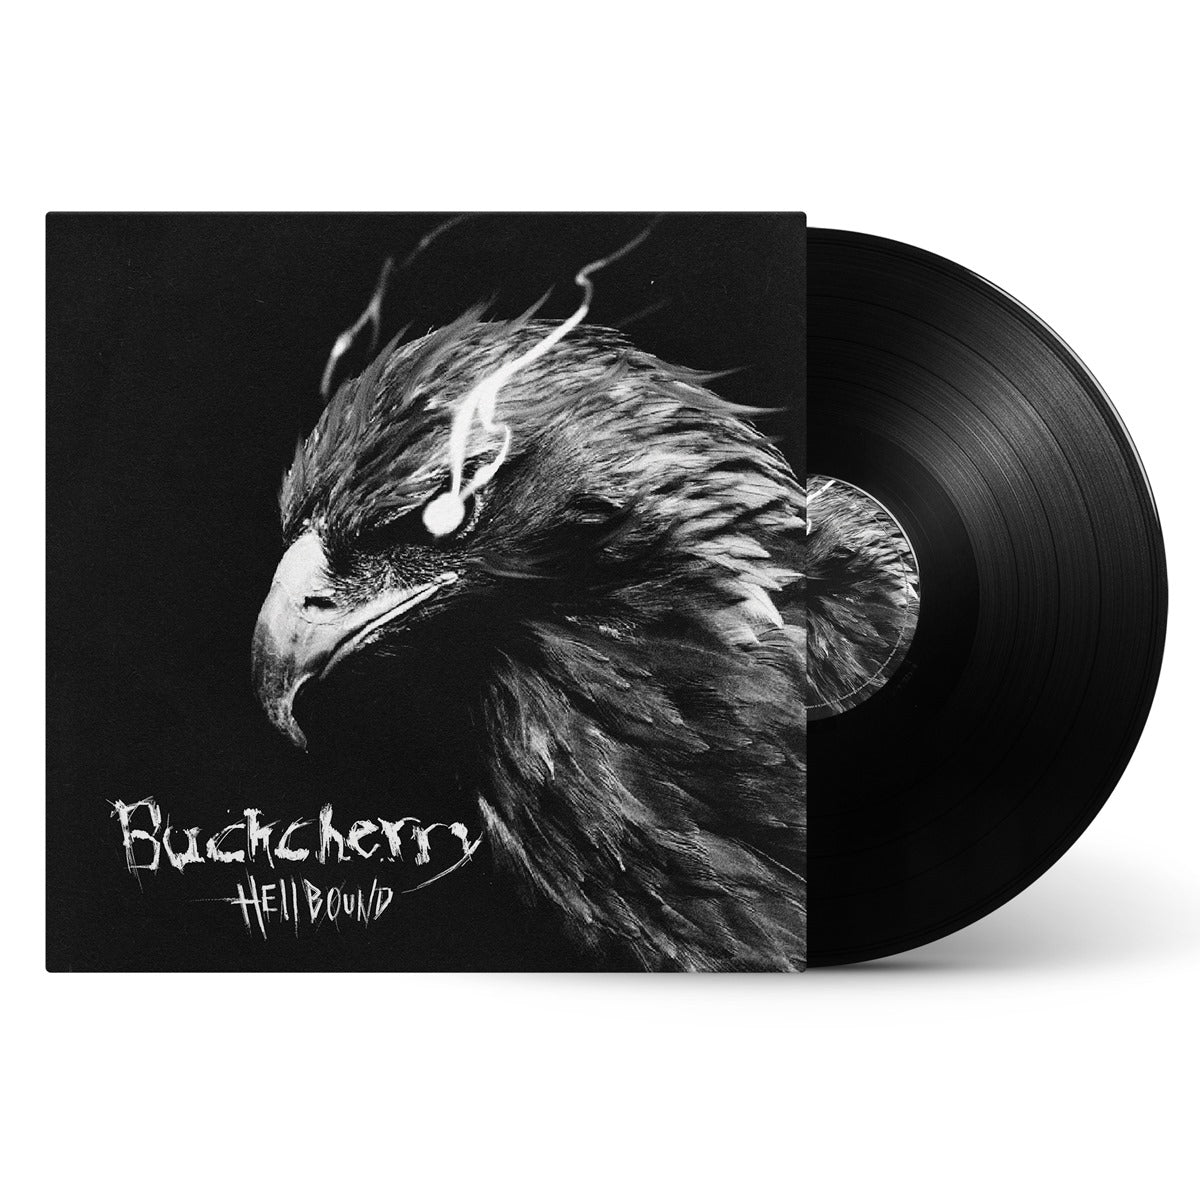 Buckcherry "Hellbound" Black Vinyl